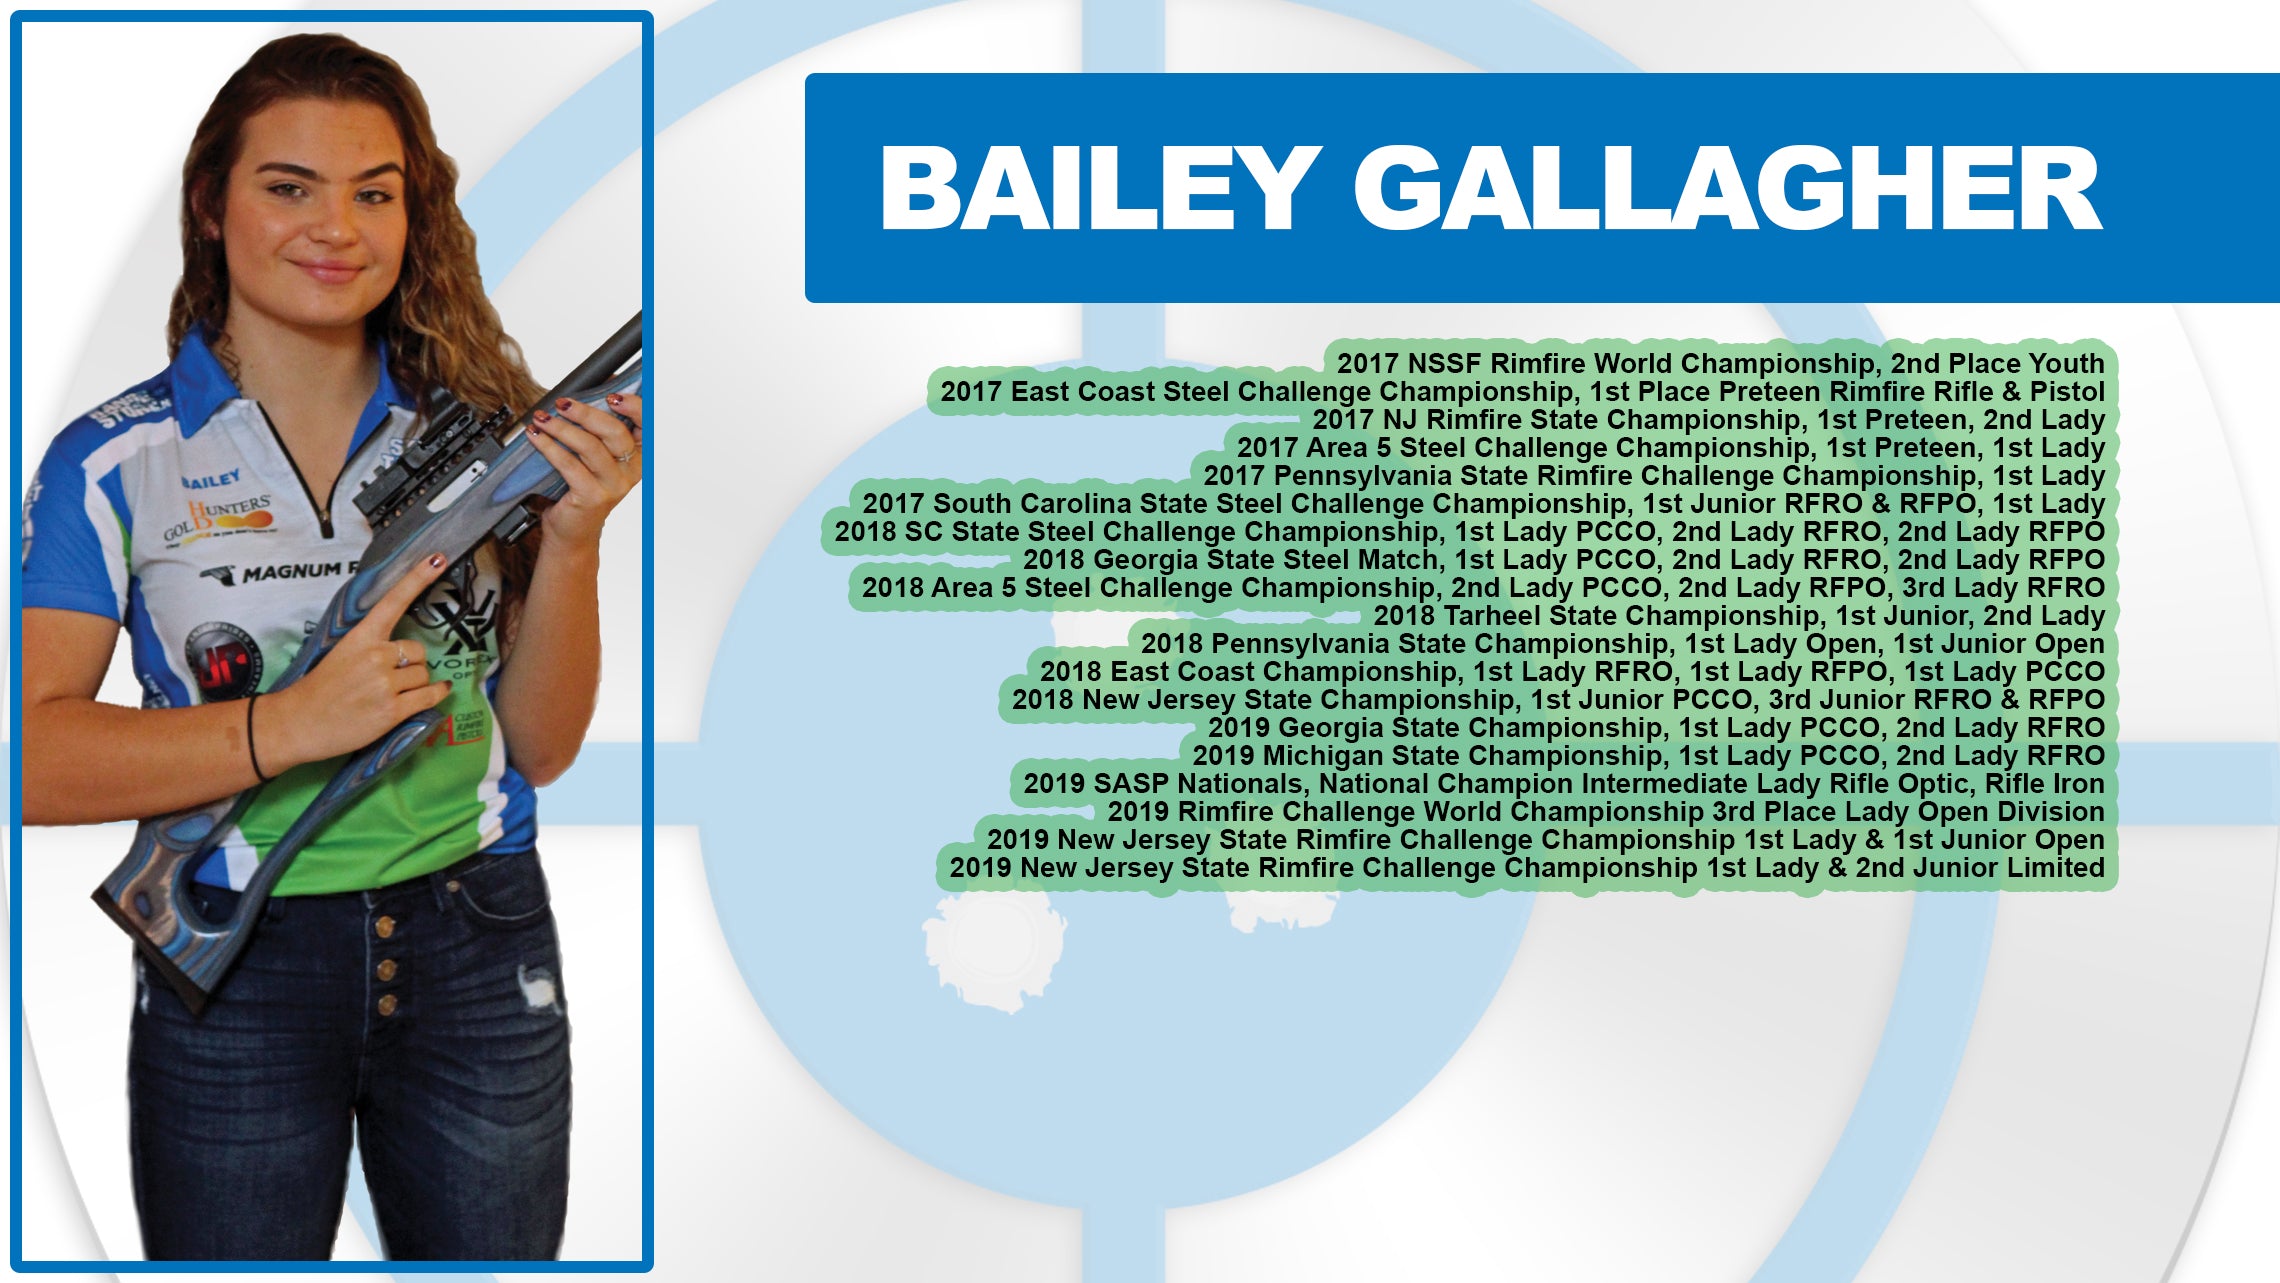 Bailey Gallagher's Facebook